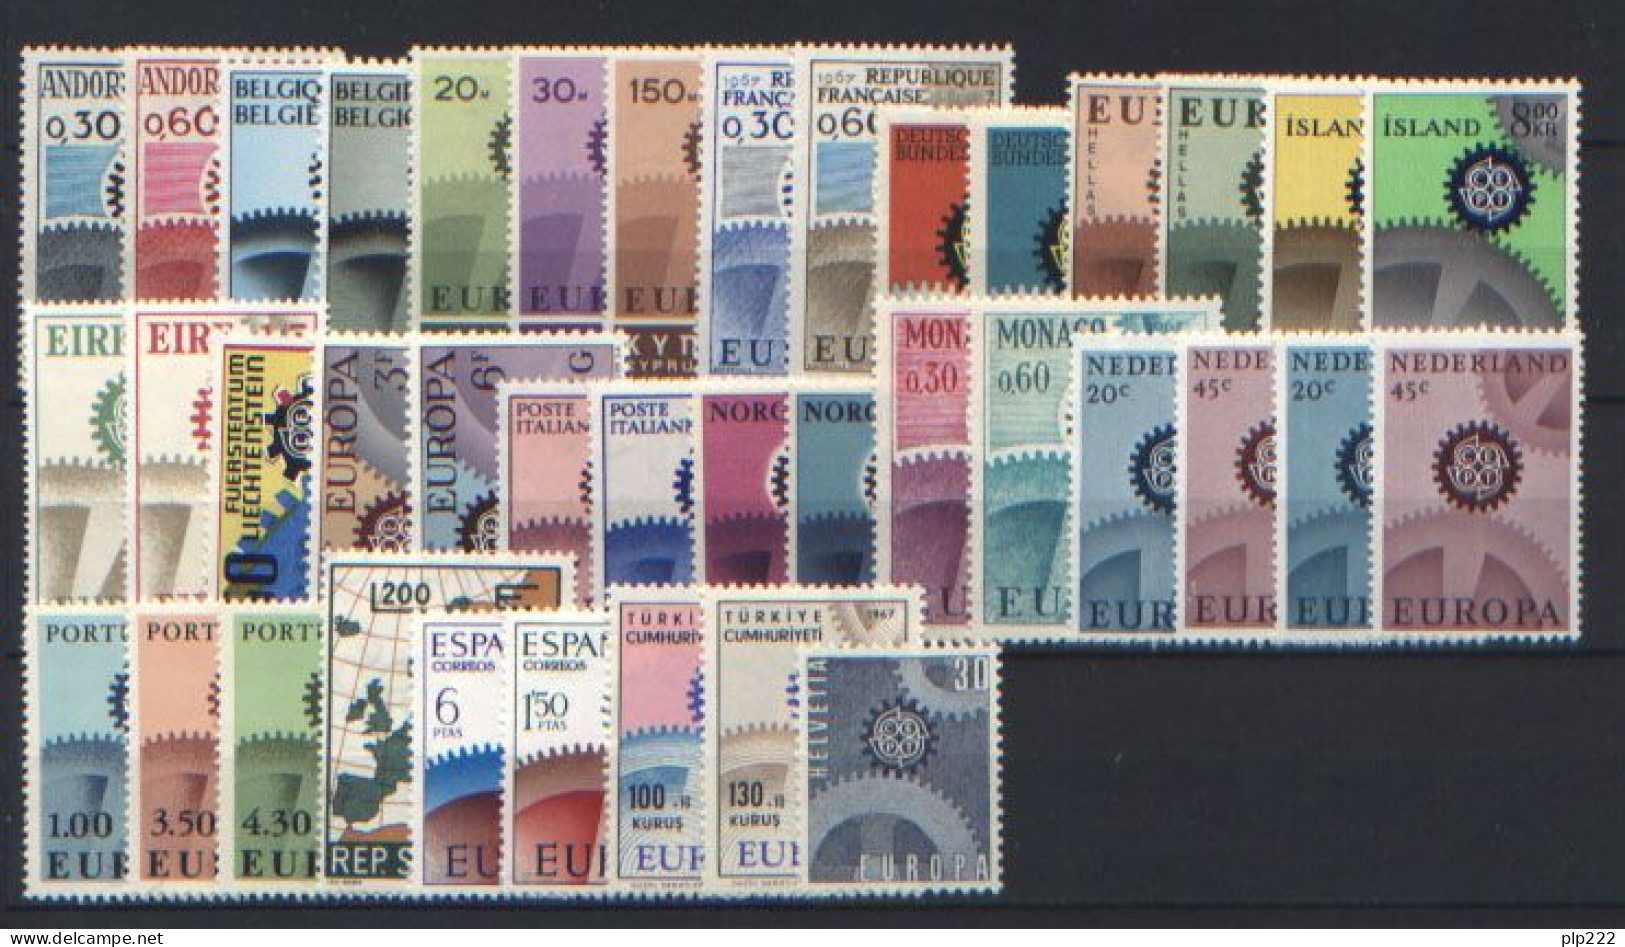 Europa CEPT 1967 Annata Completa + Foglietto / Complete Year Set + S/S **/MNH VF - Años Completos